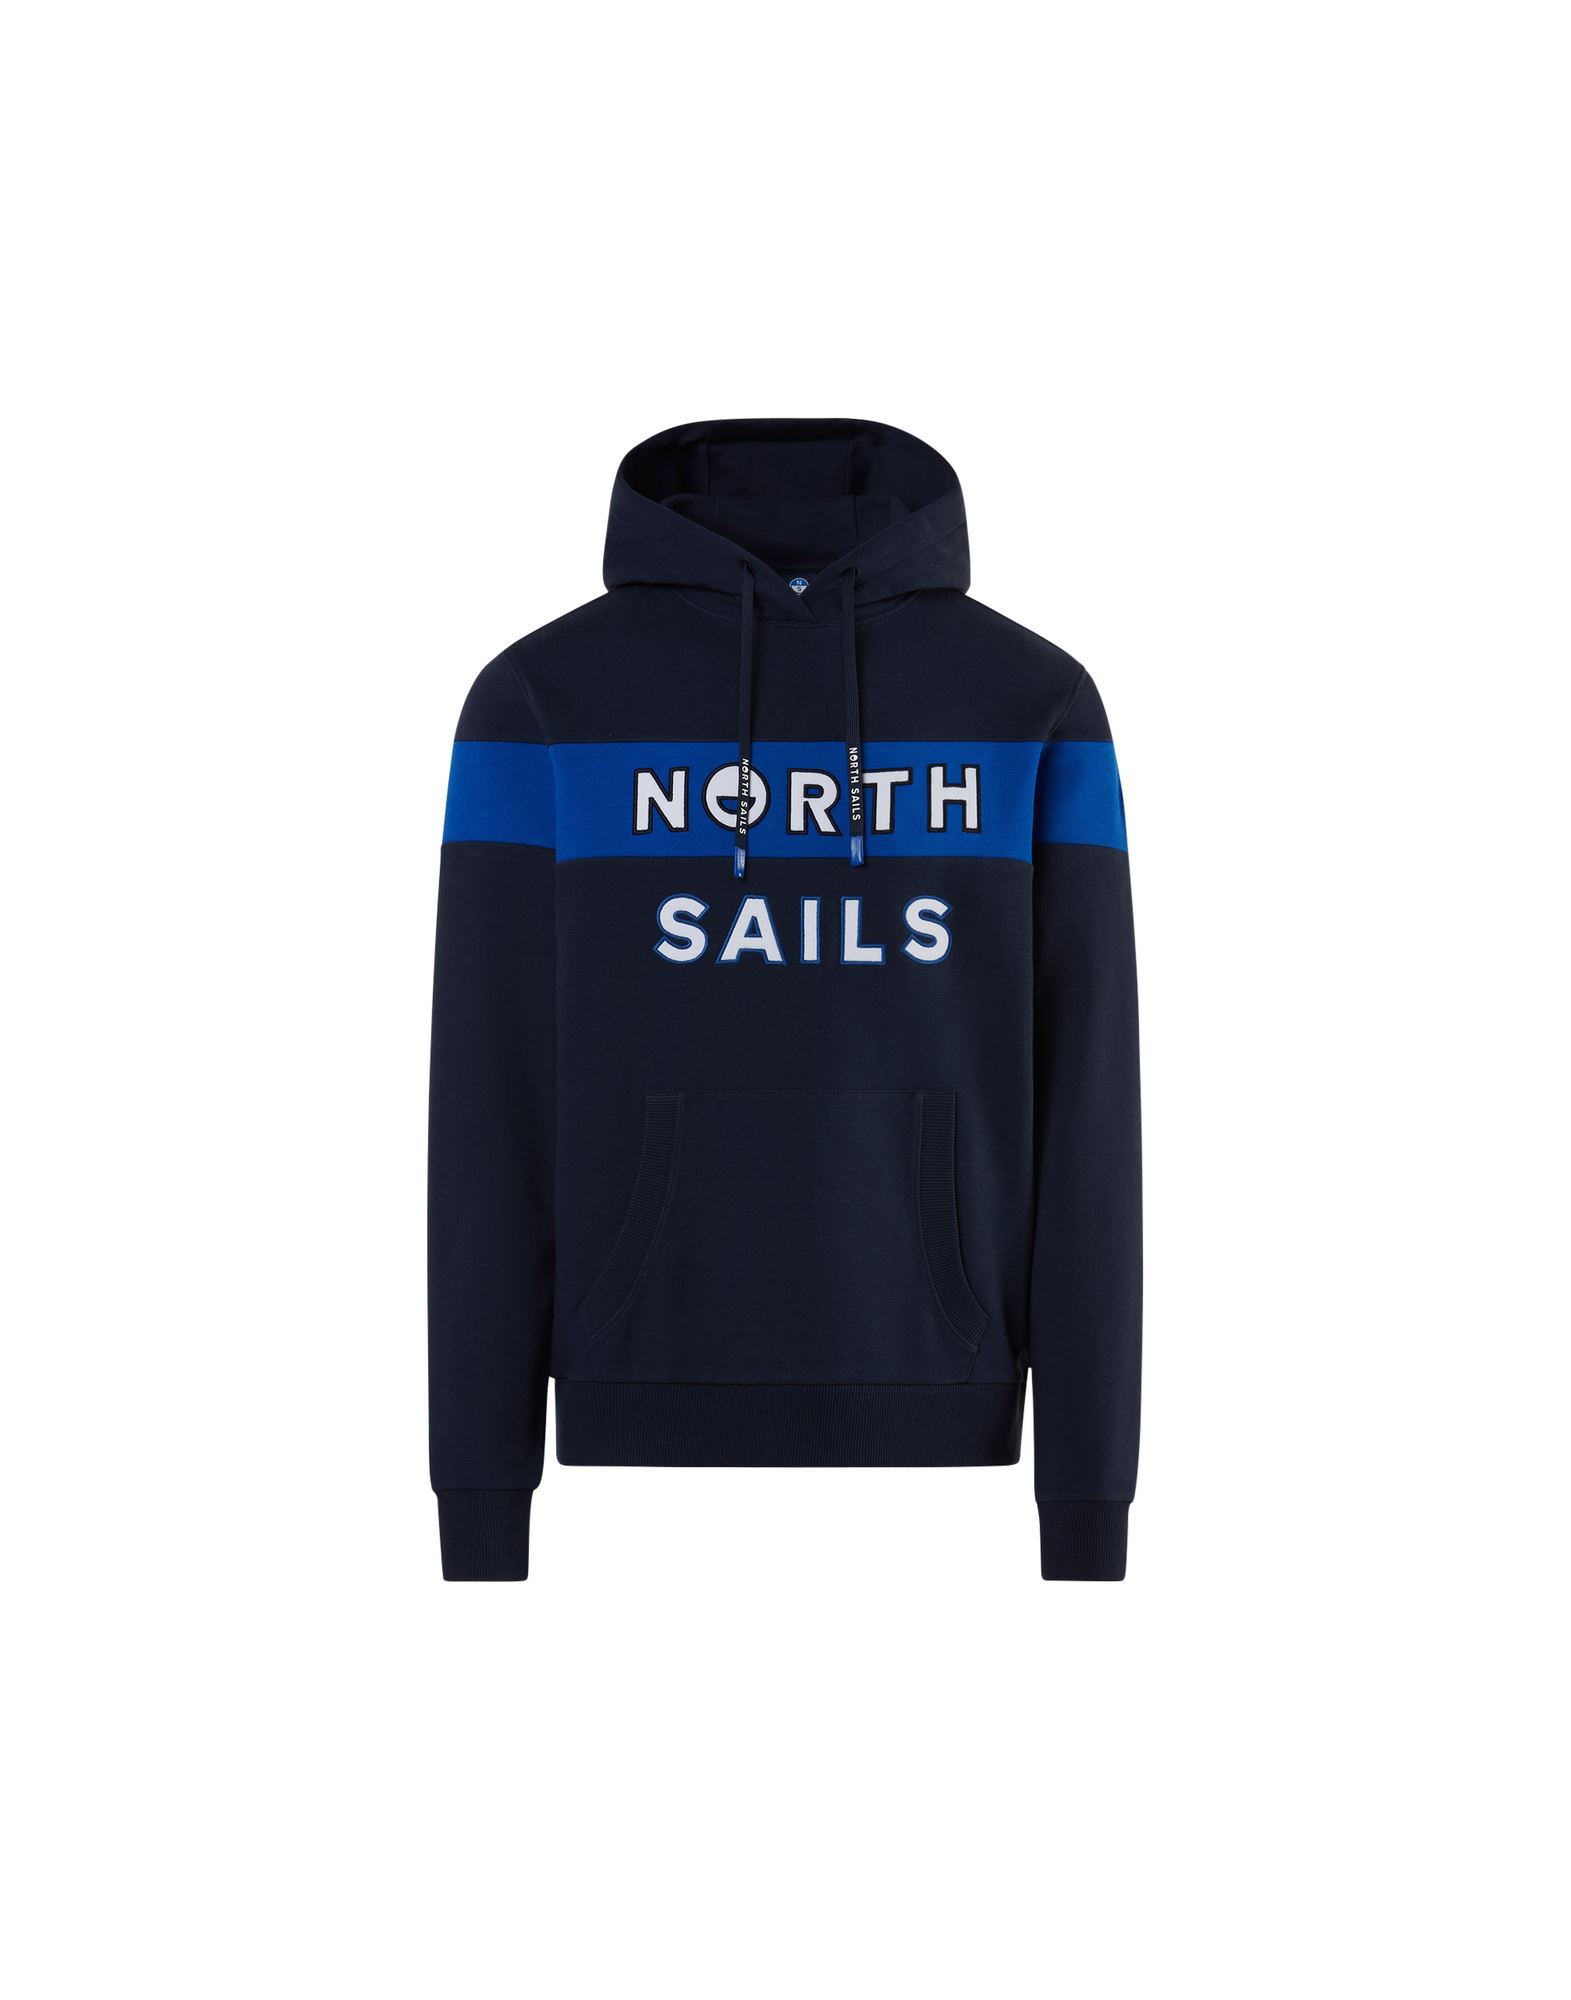 NORTH SAILS Sweatshirt Herren Blau von NORTH SAILS